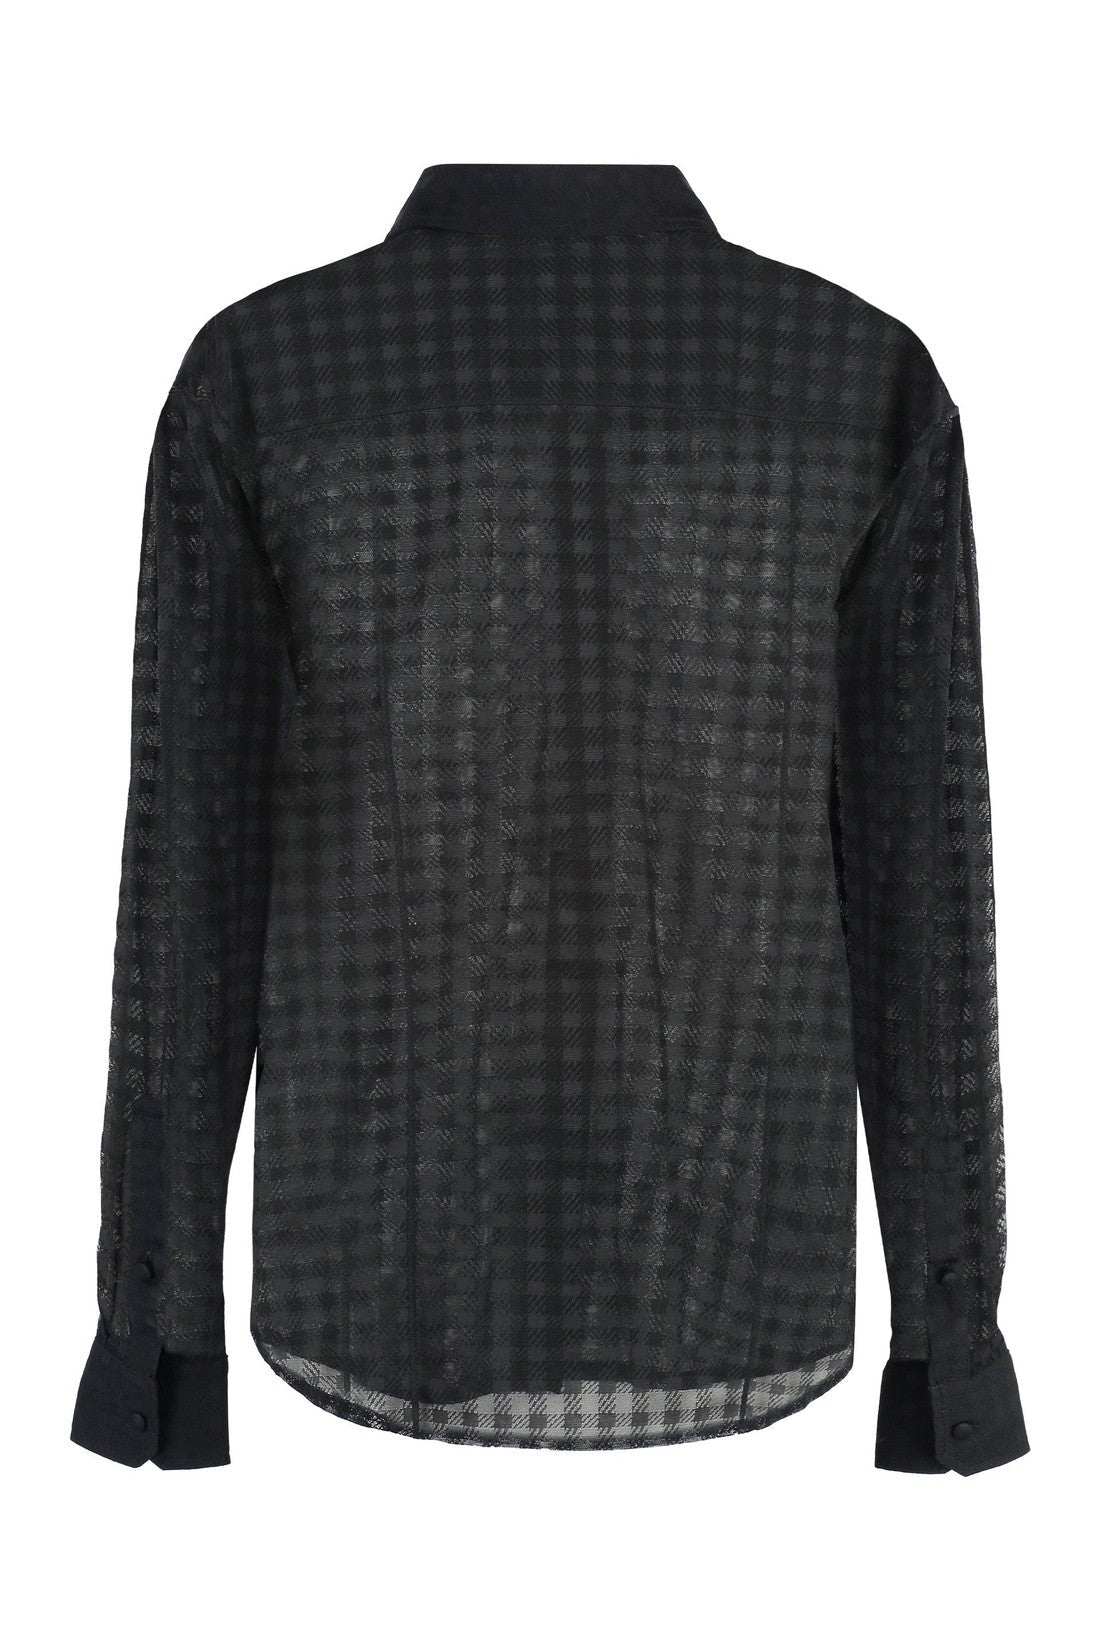 AMI PARIS-OUTLET-SALE-Transparent fabric shirt-ARCHIVIST